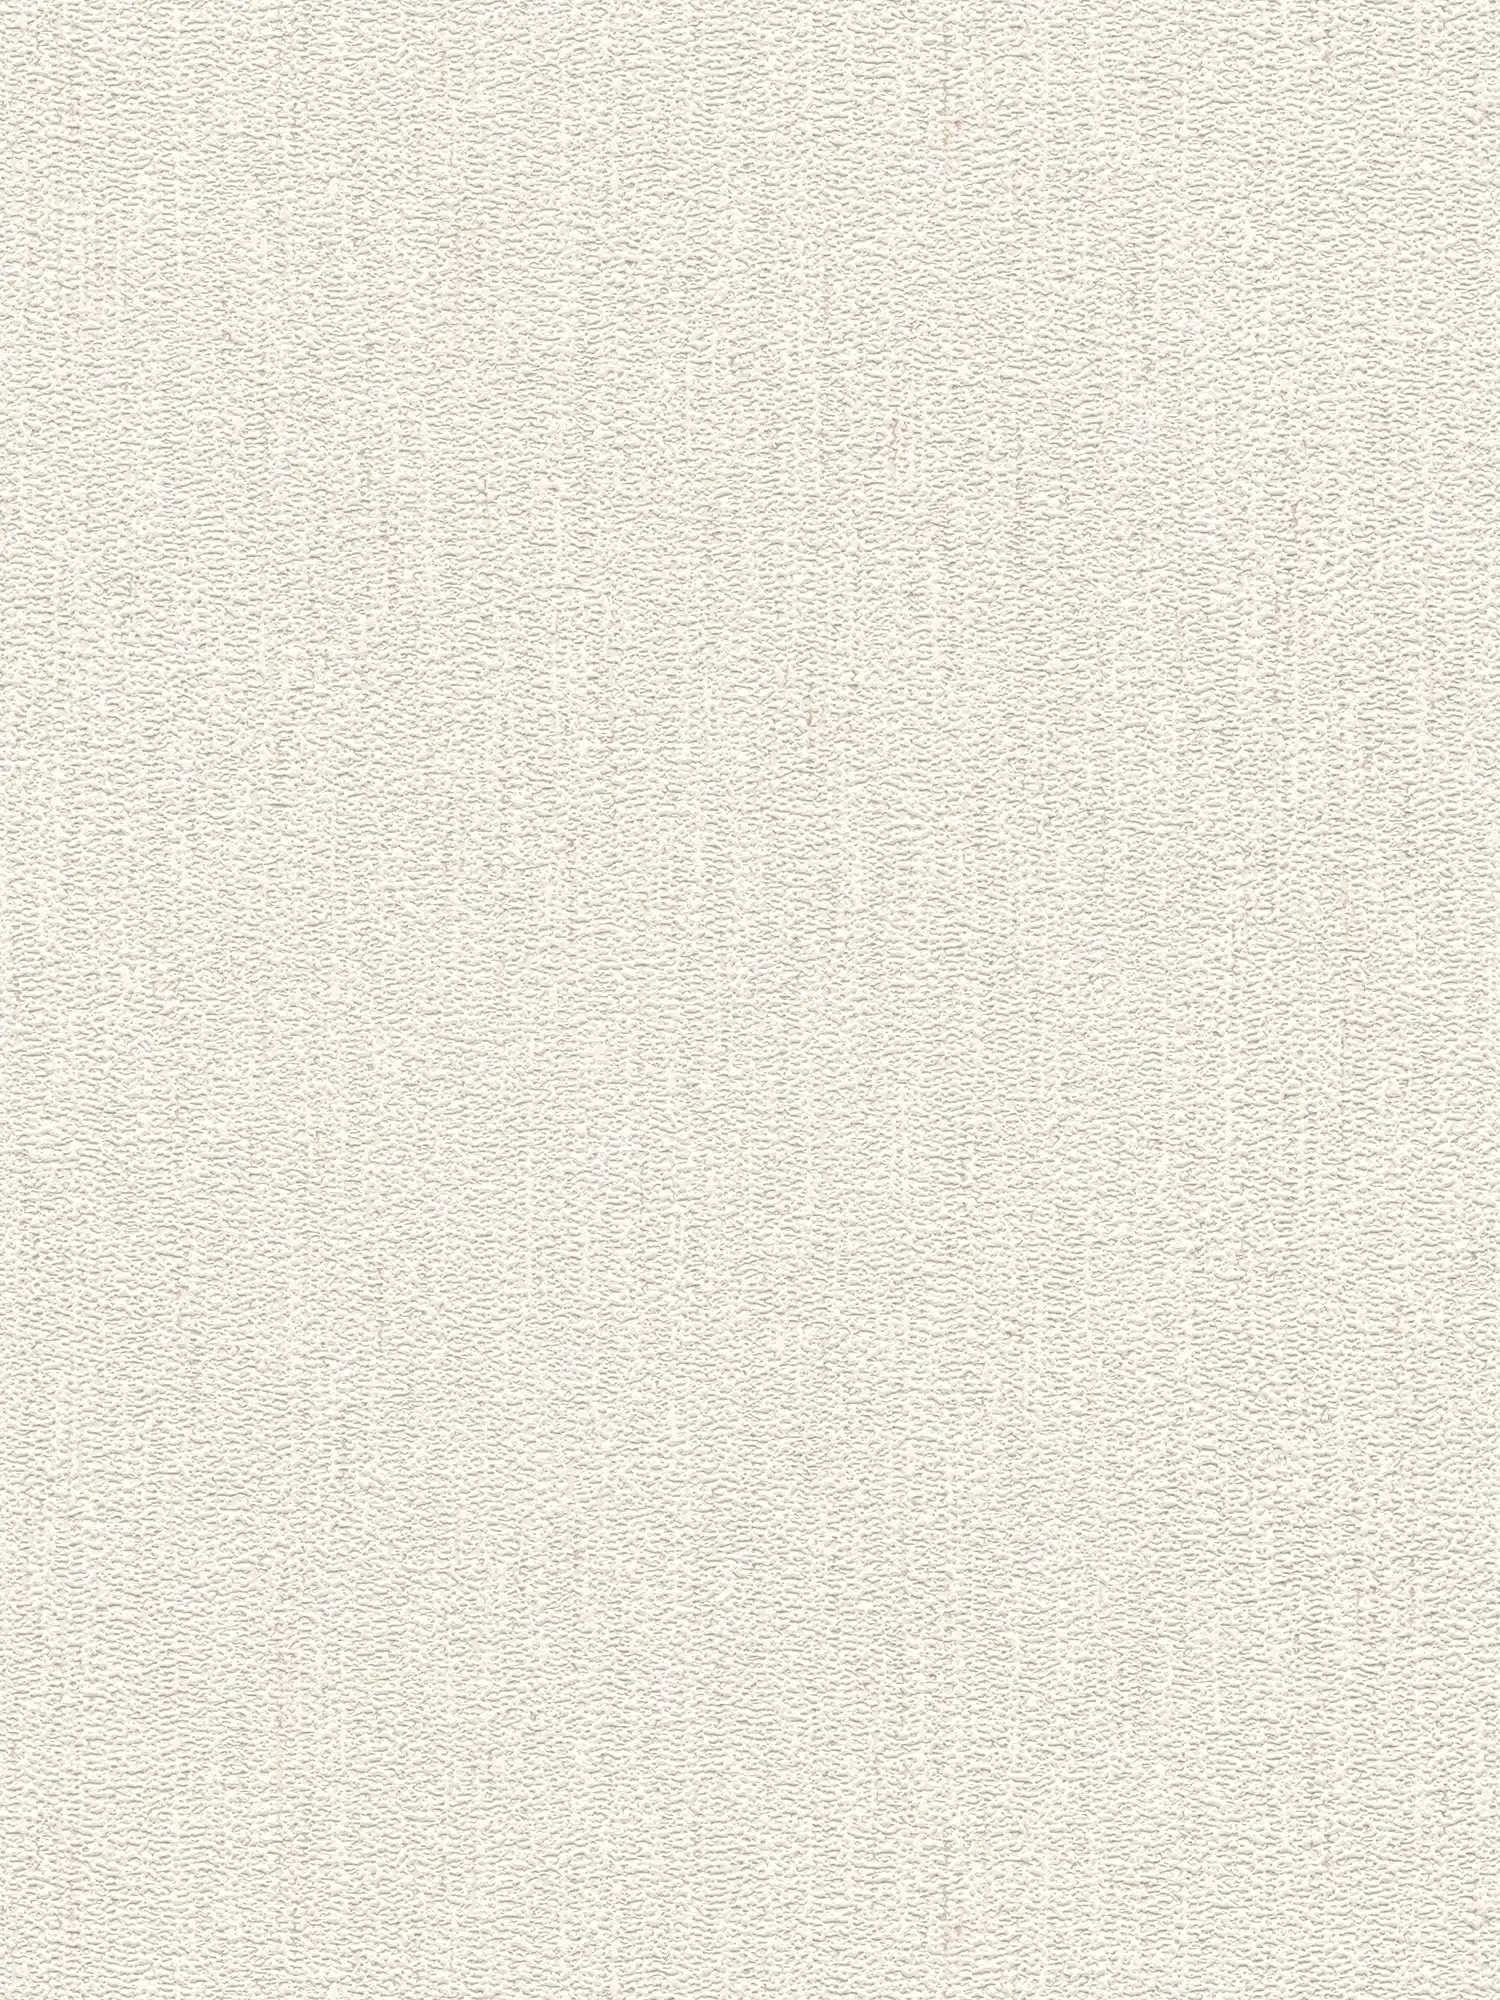 Carta da parati in tessuto non tessuto con struttura in tessuto lucido chiaro - bianco, crema
